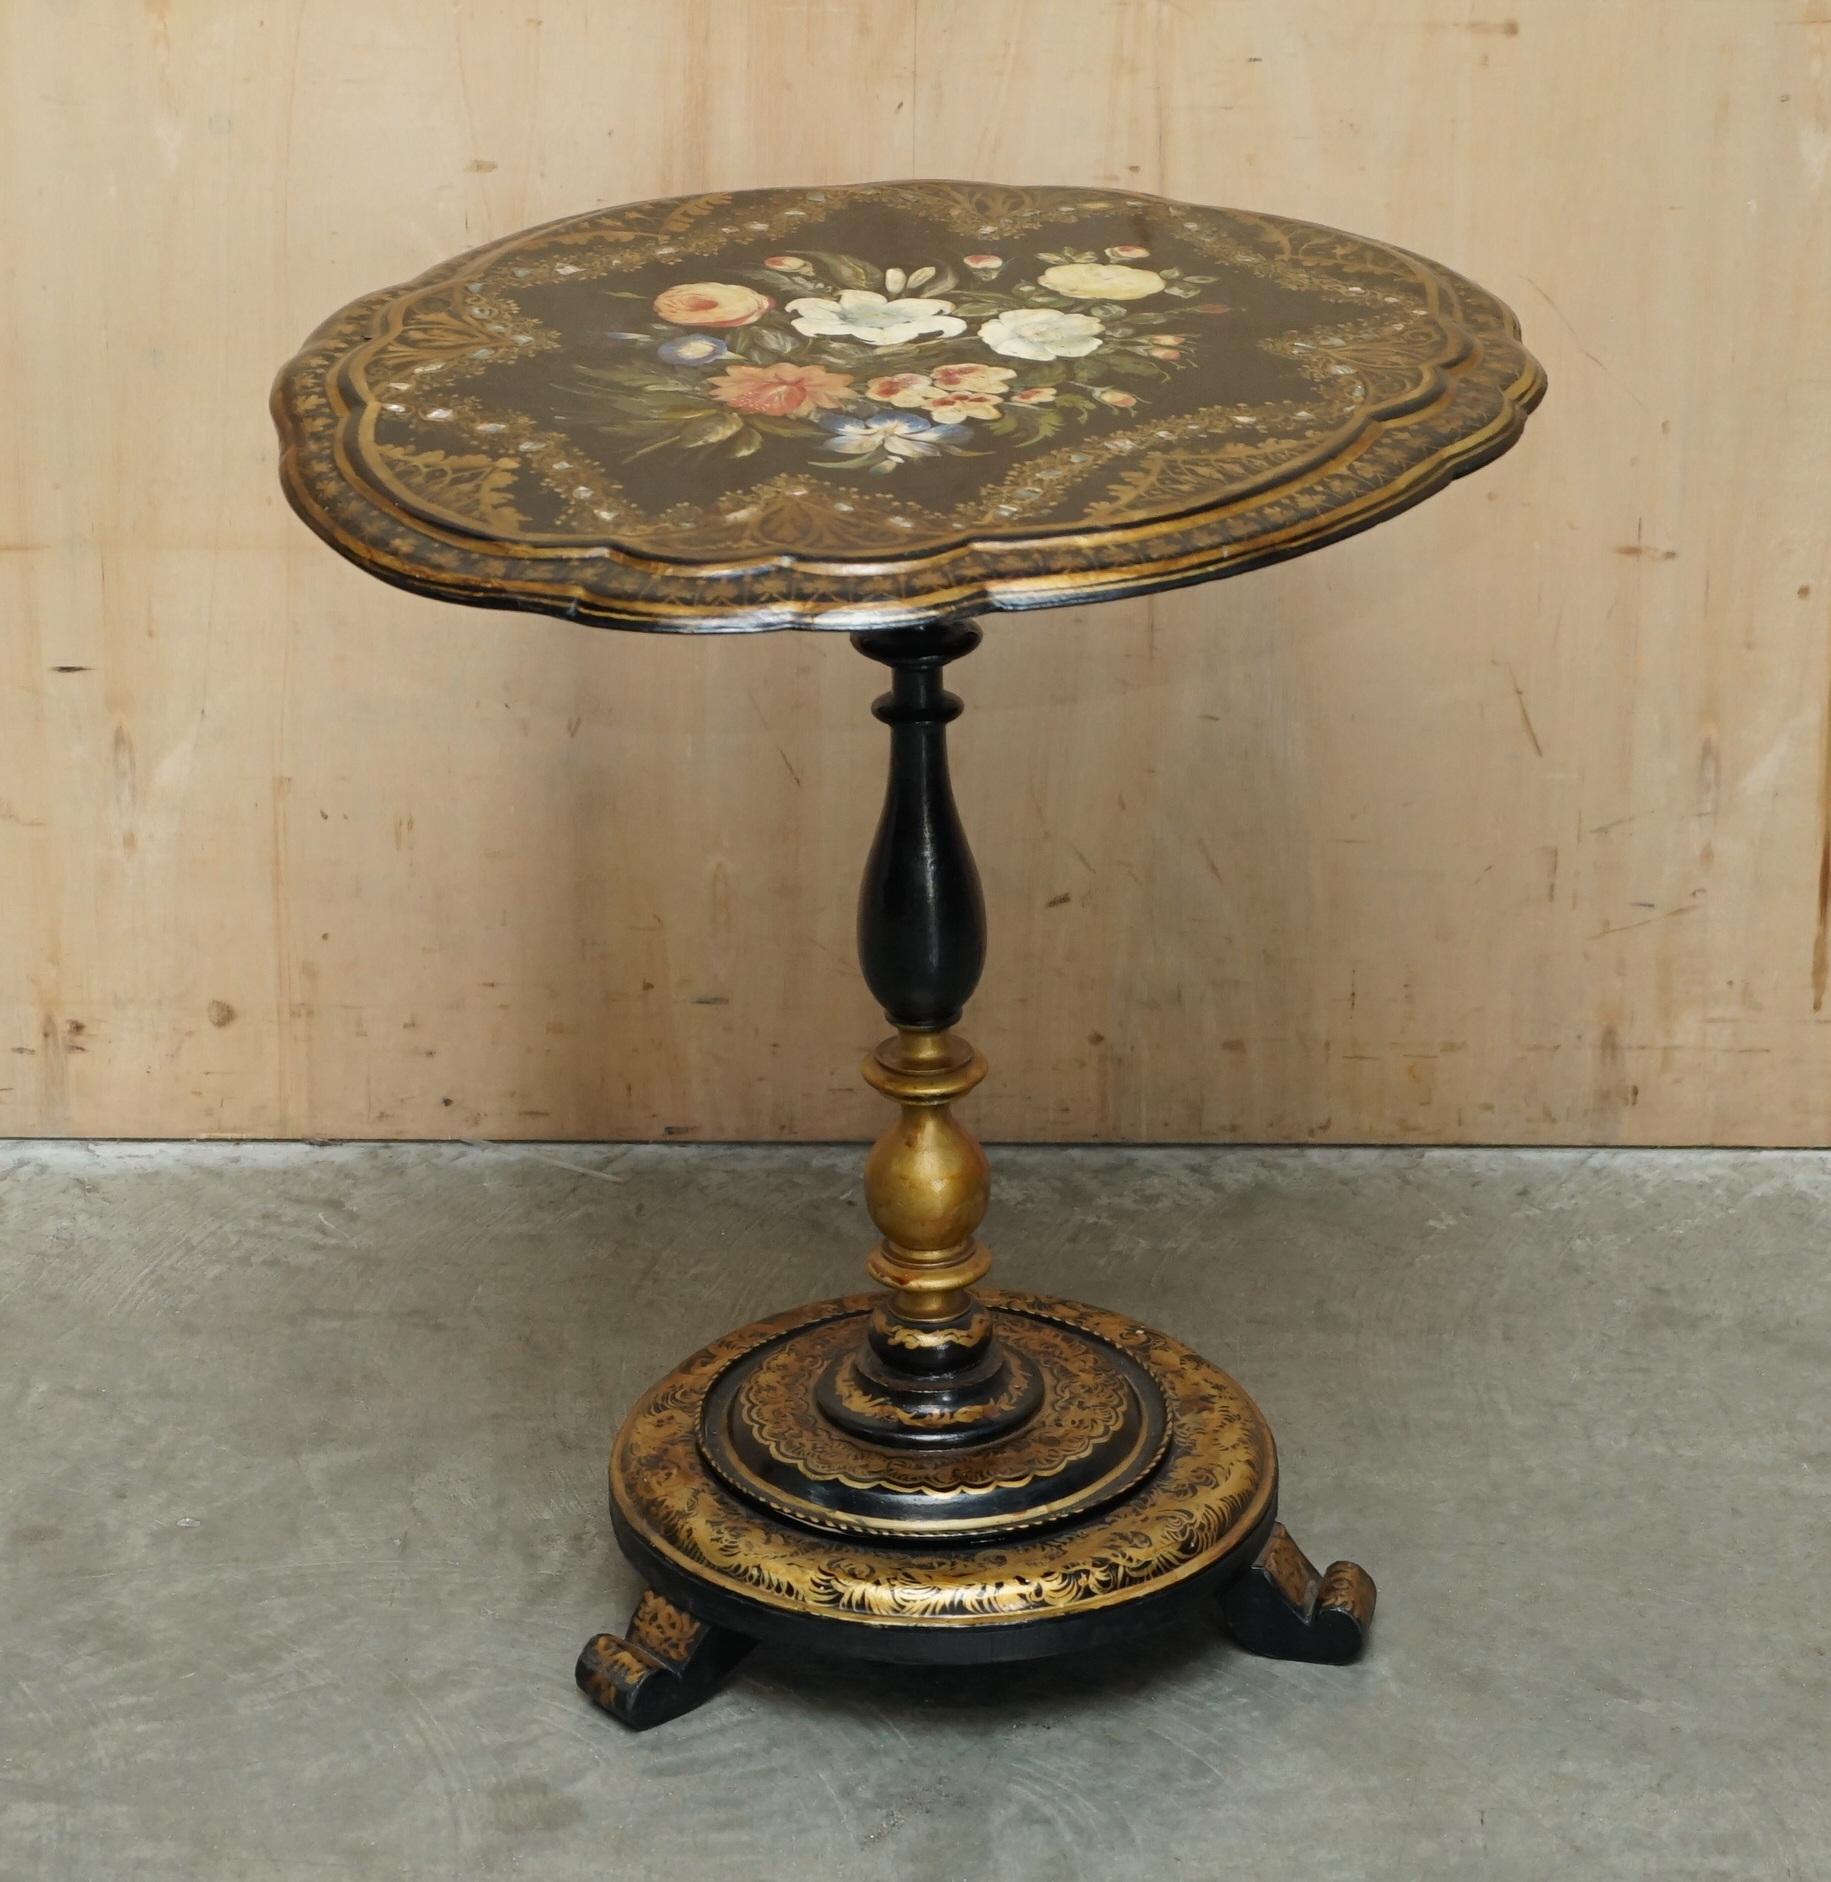 Royal House Antiques

Royal House Antiques freut sich, diesen sehr schönen antiken Regency-Tisch um 1810-1820 zum Verkauf anbieten zu können, der schwarz lackiert und mit Perlmutt eingelegt ist und eine handbemalte, florale Oberfläche hat.

Bitte